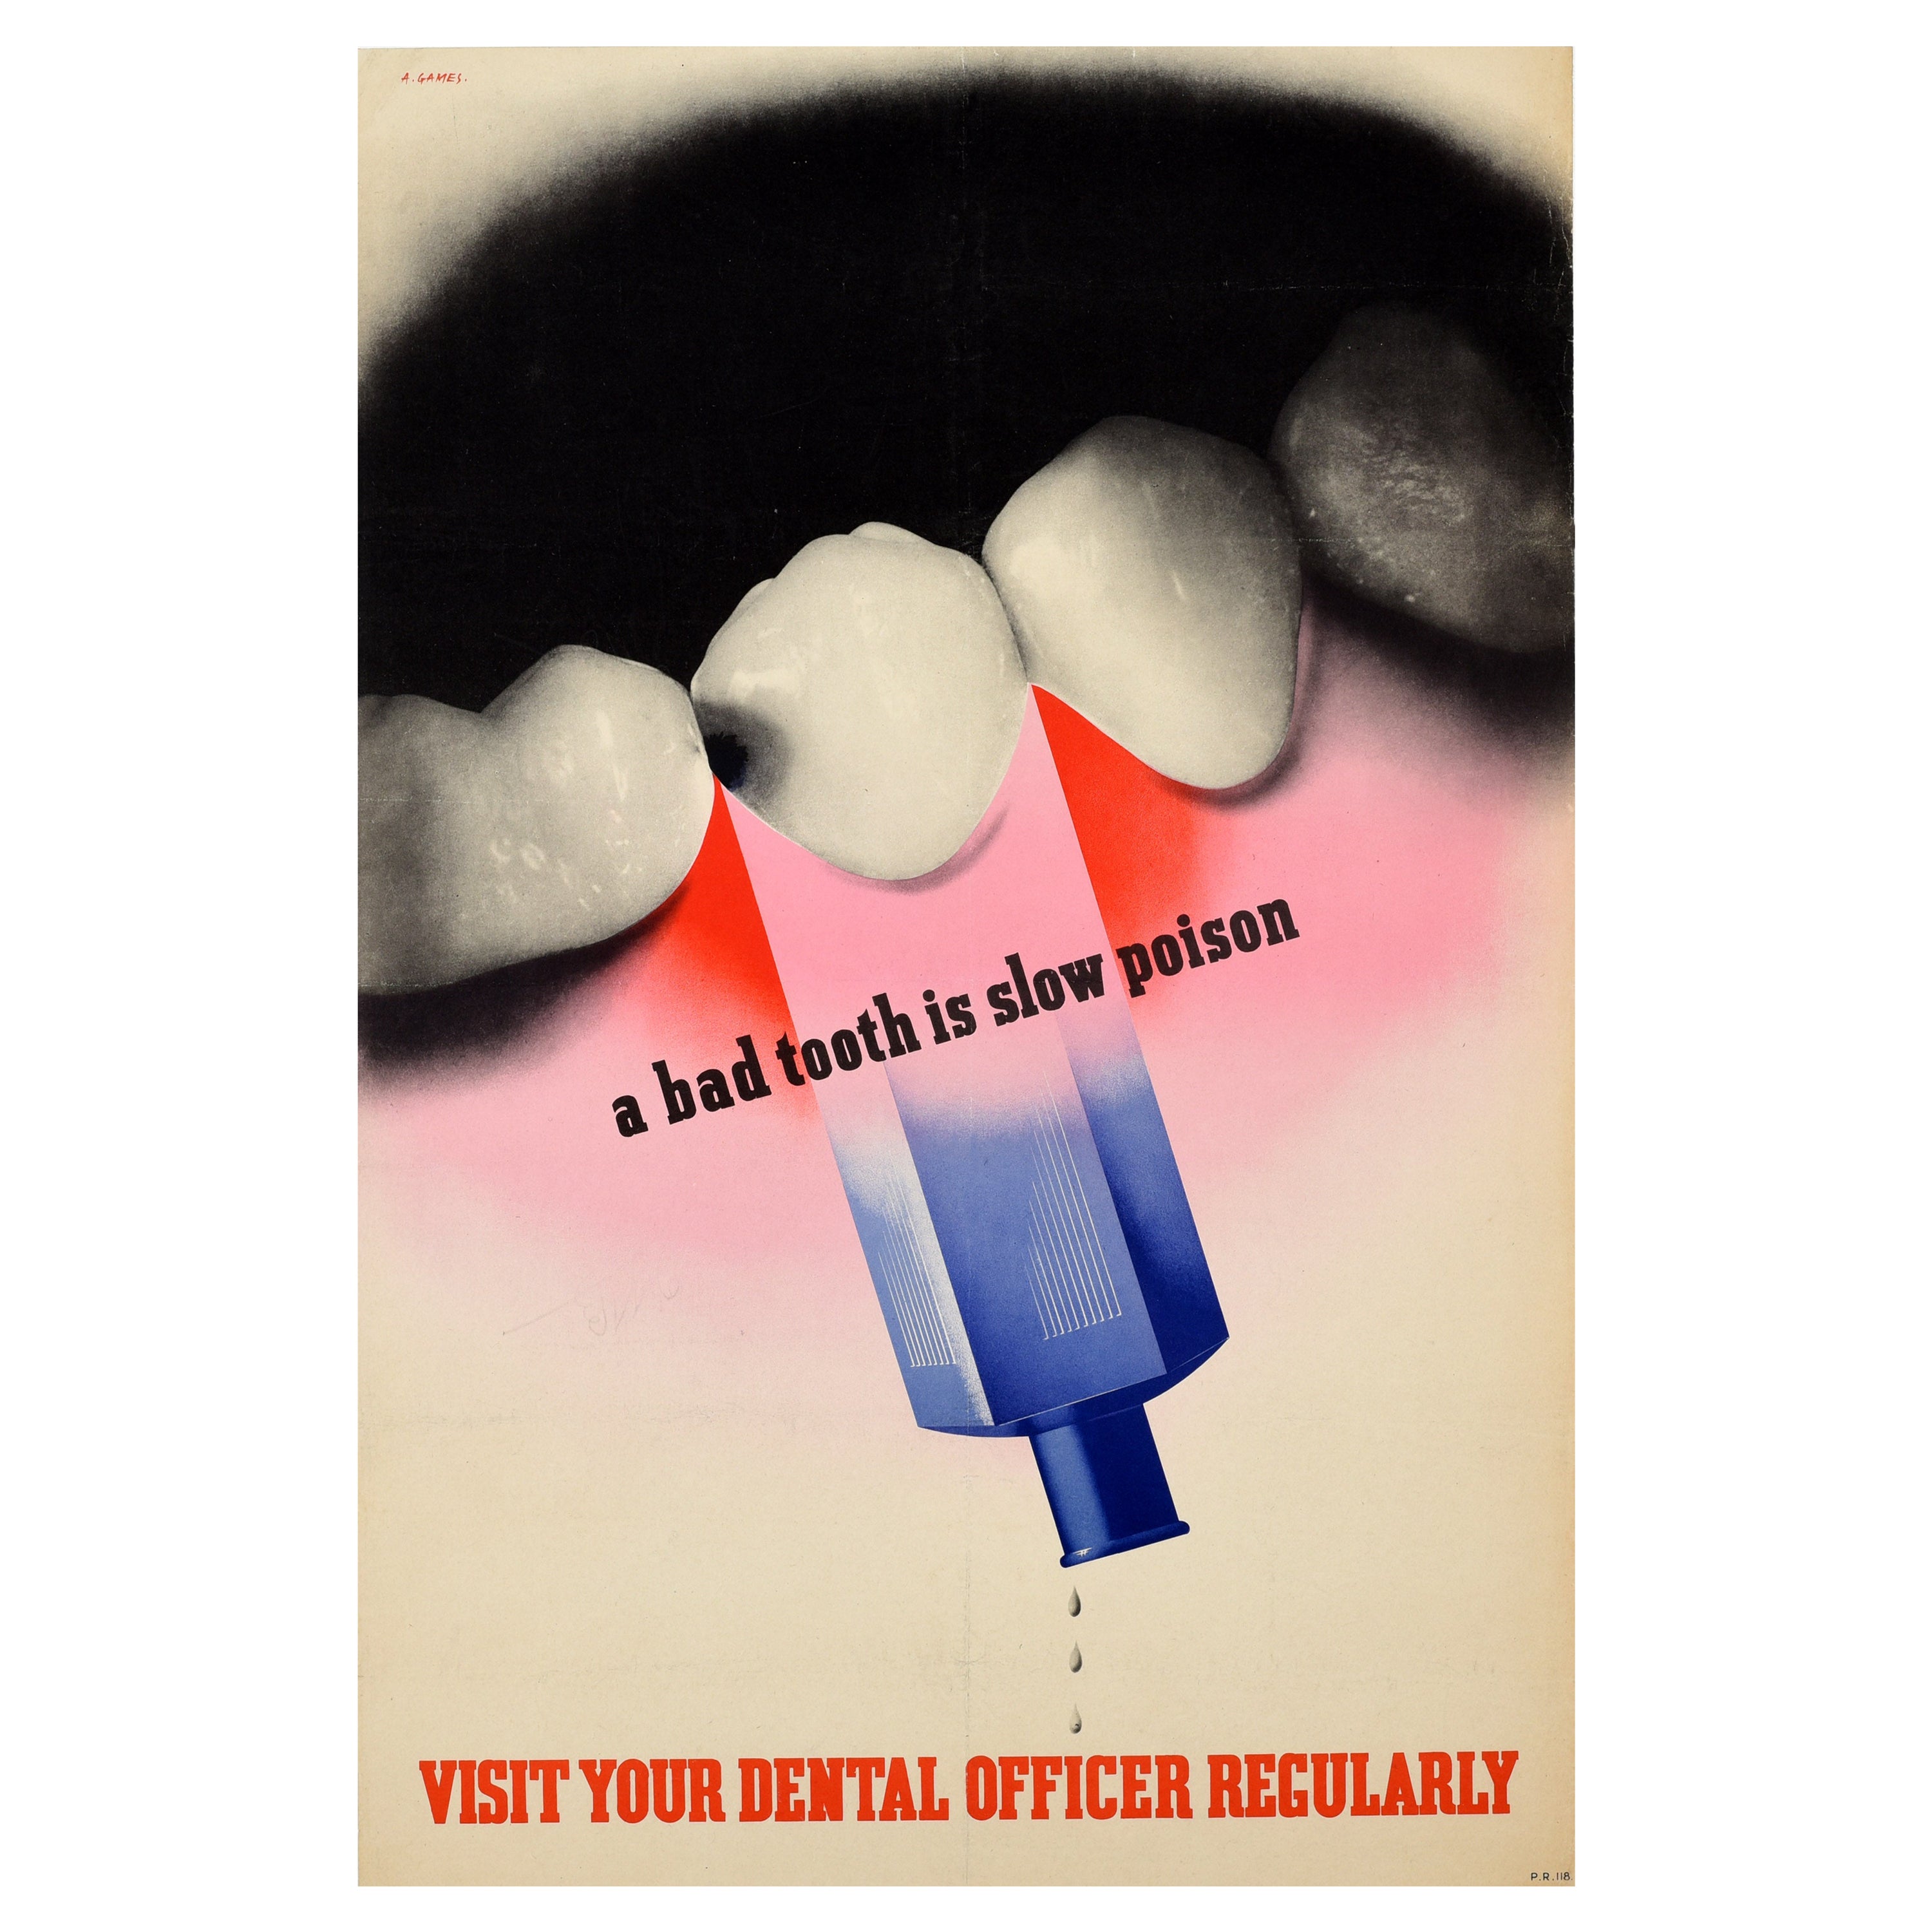 Original Vintage WWII Militärische Gesundheit Poster „Bad Tooth Slow Poison Abram Games“, Abram-Spiel